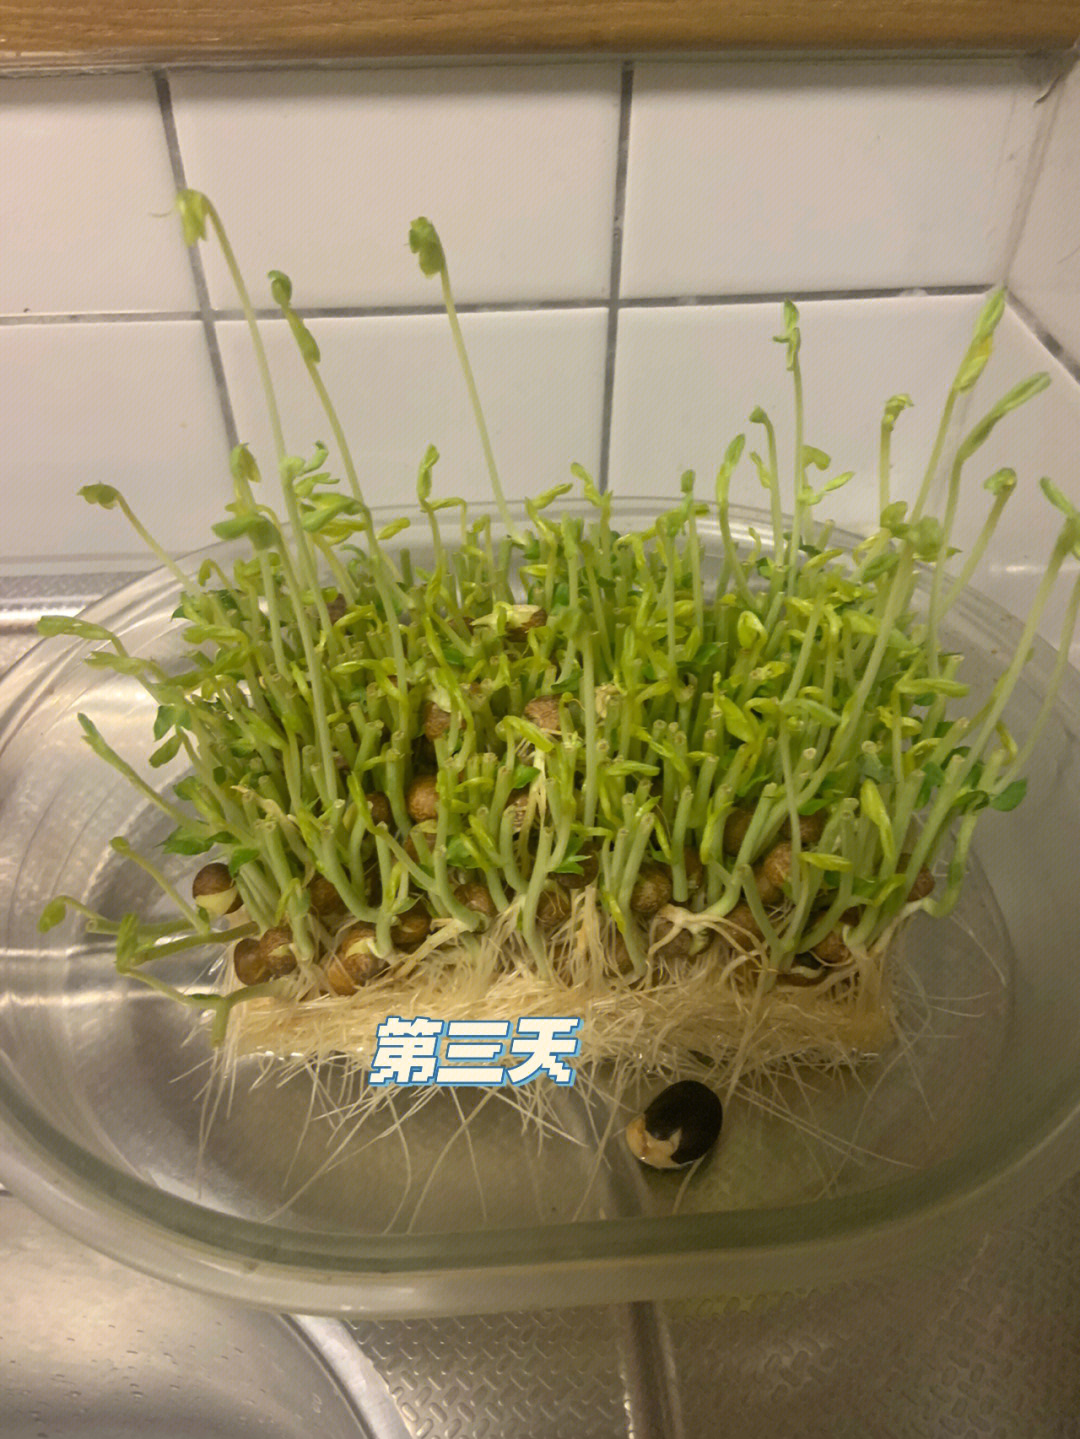 绿豆发芽实验过程图片